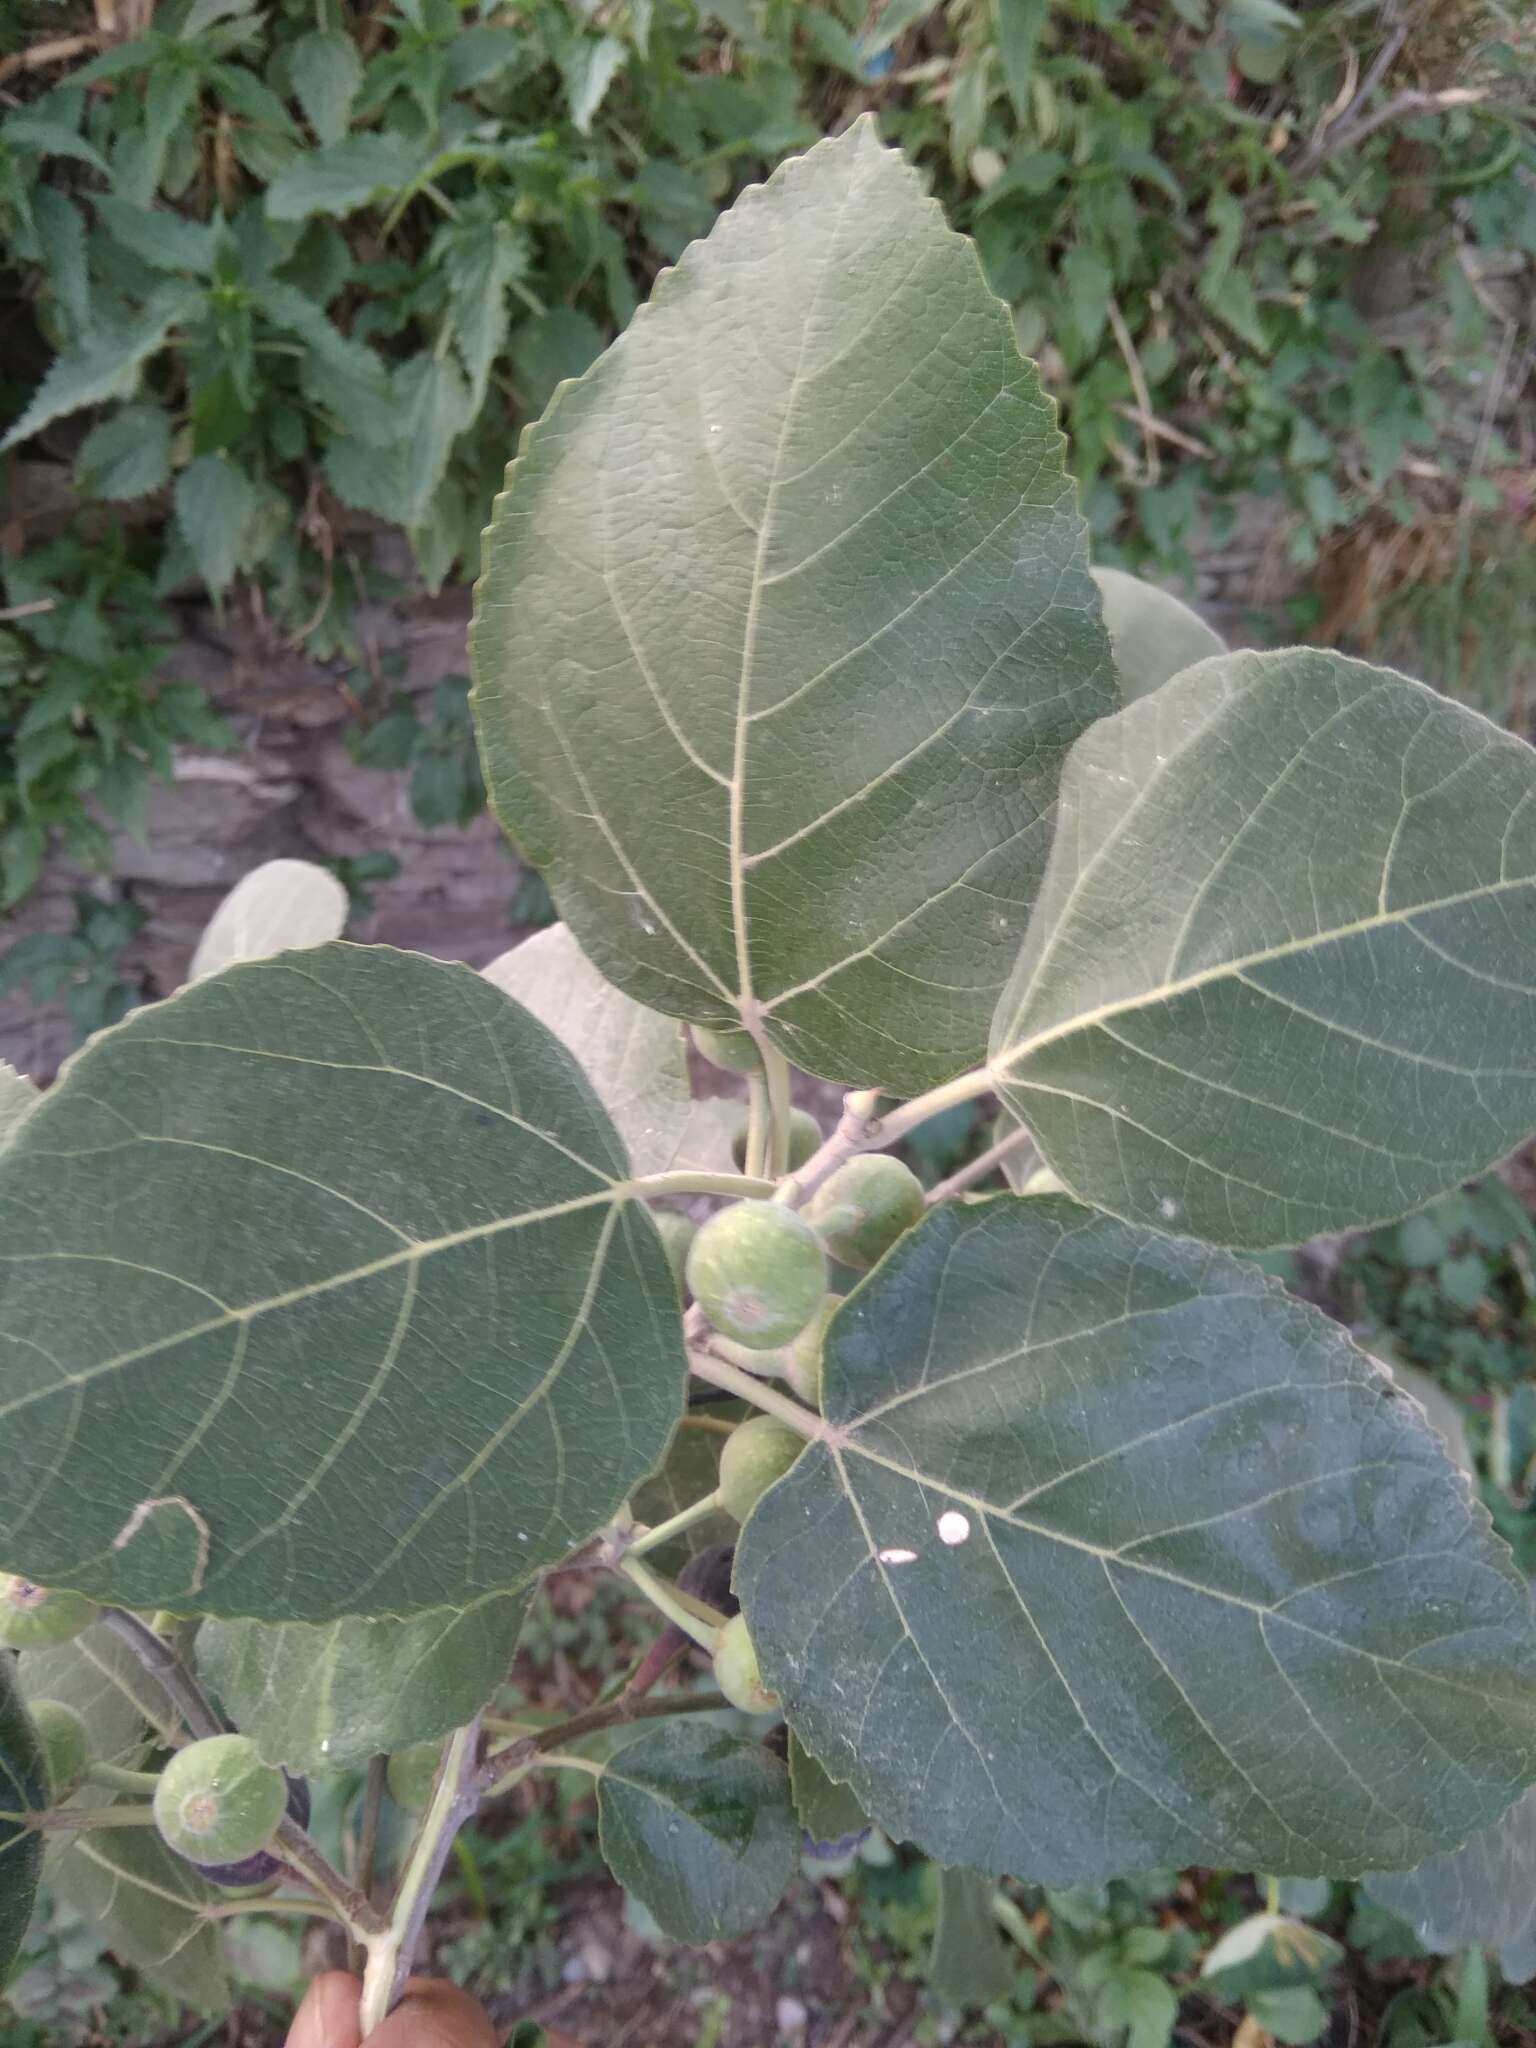 Image of Punjab fig